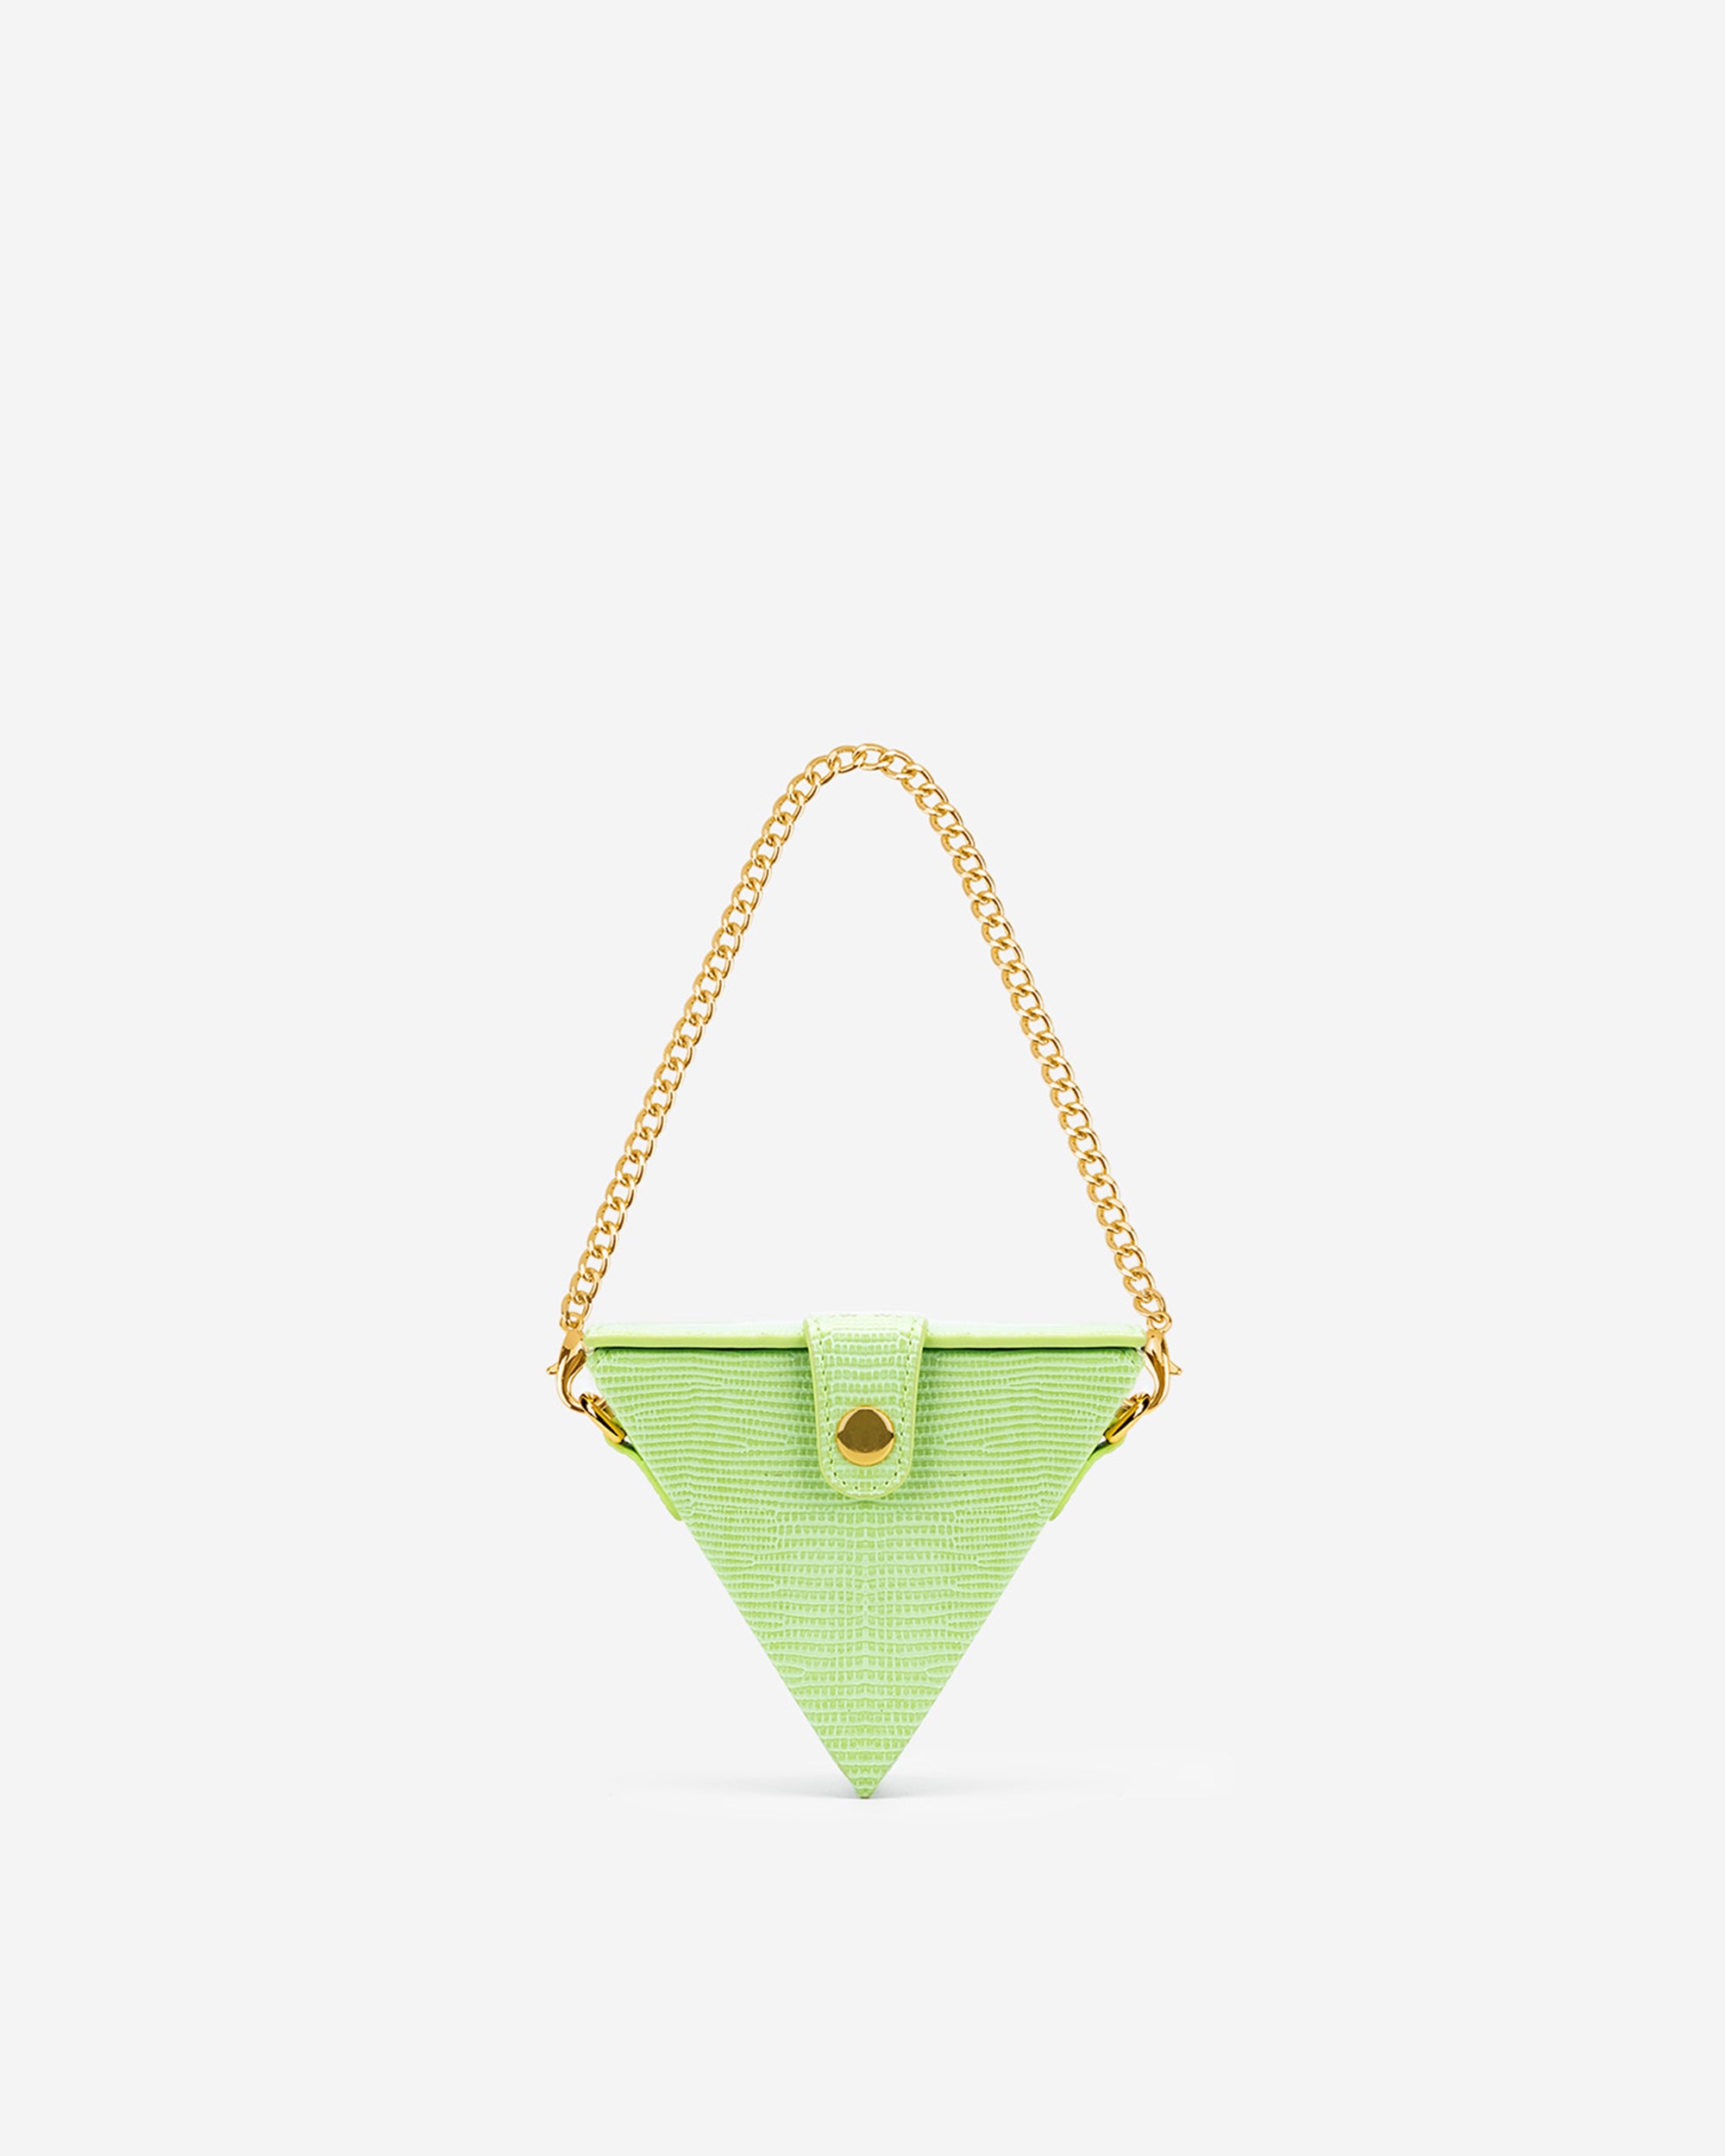 Triangle Mini Box - Limone Verde Lizard